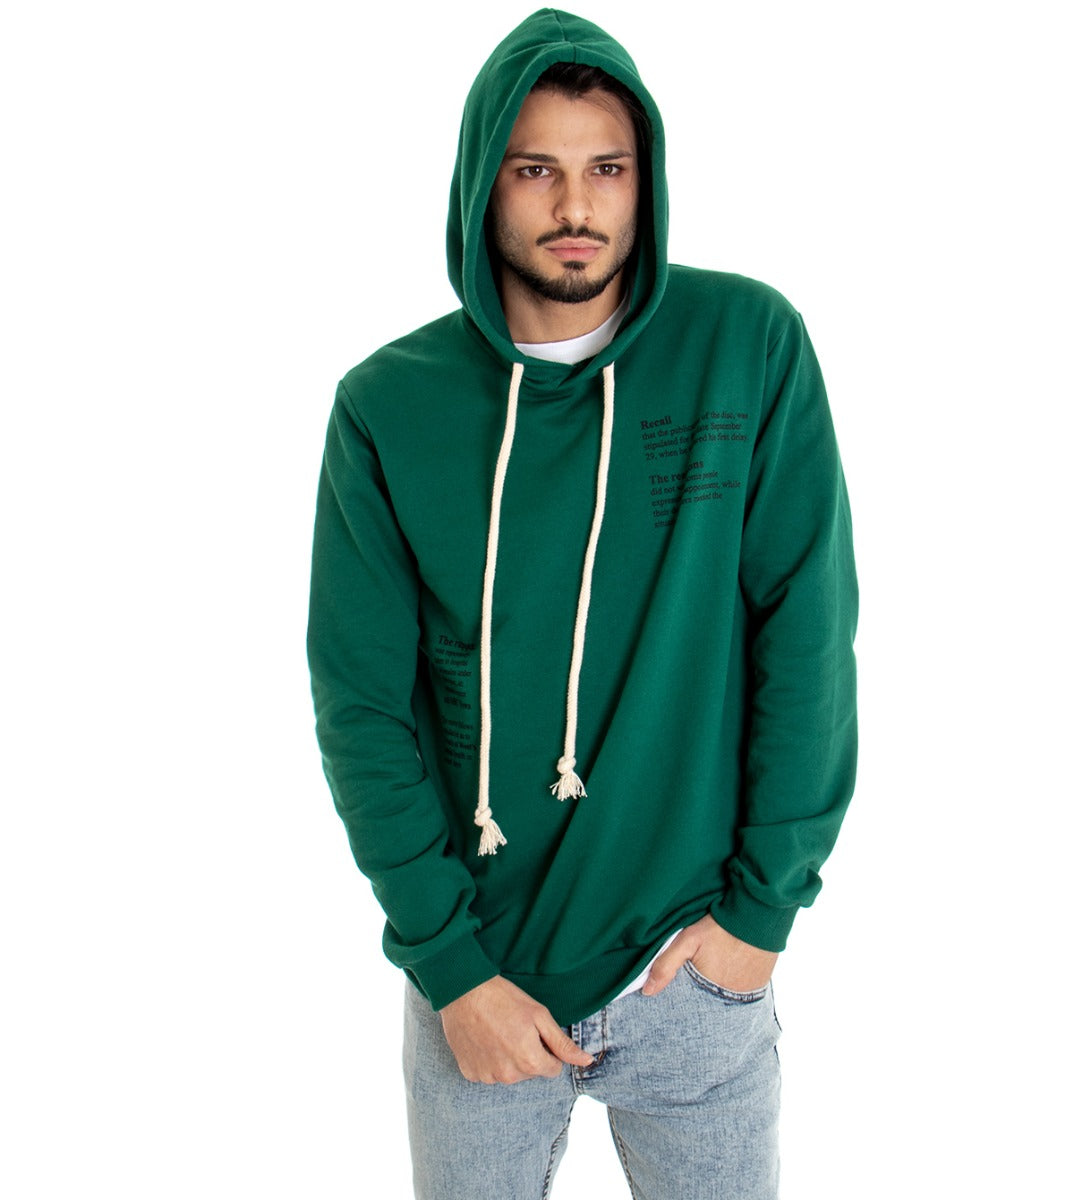 Men's Sweatshirt with Hood Green Shirt Written Print Regular Fit GIOSAL-F2532A